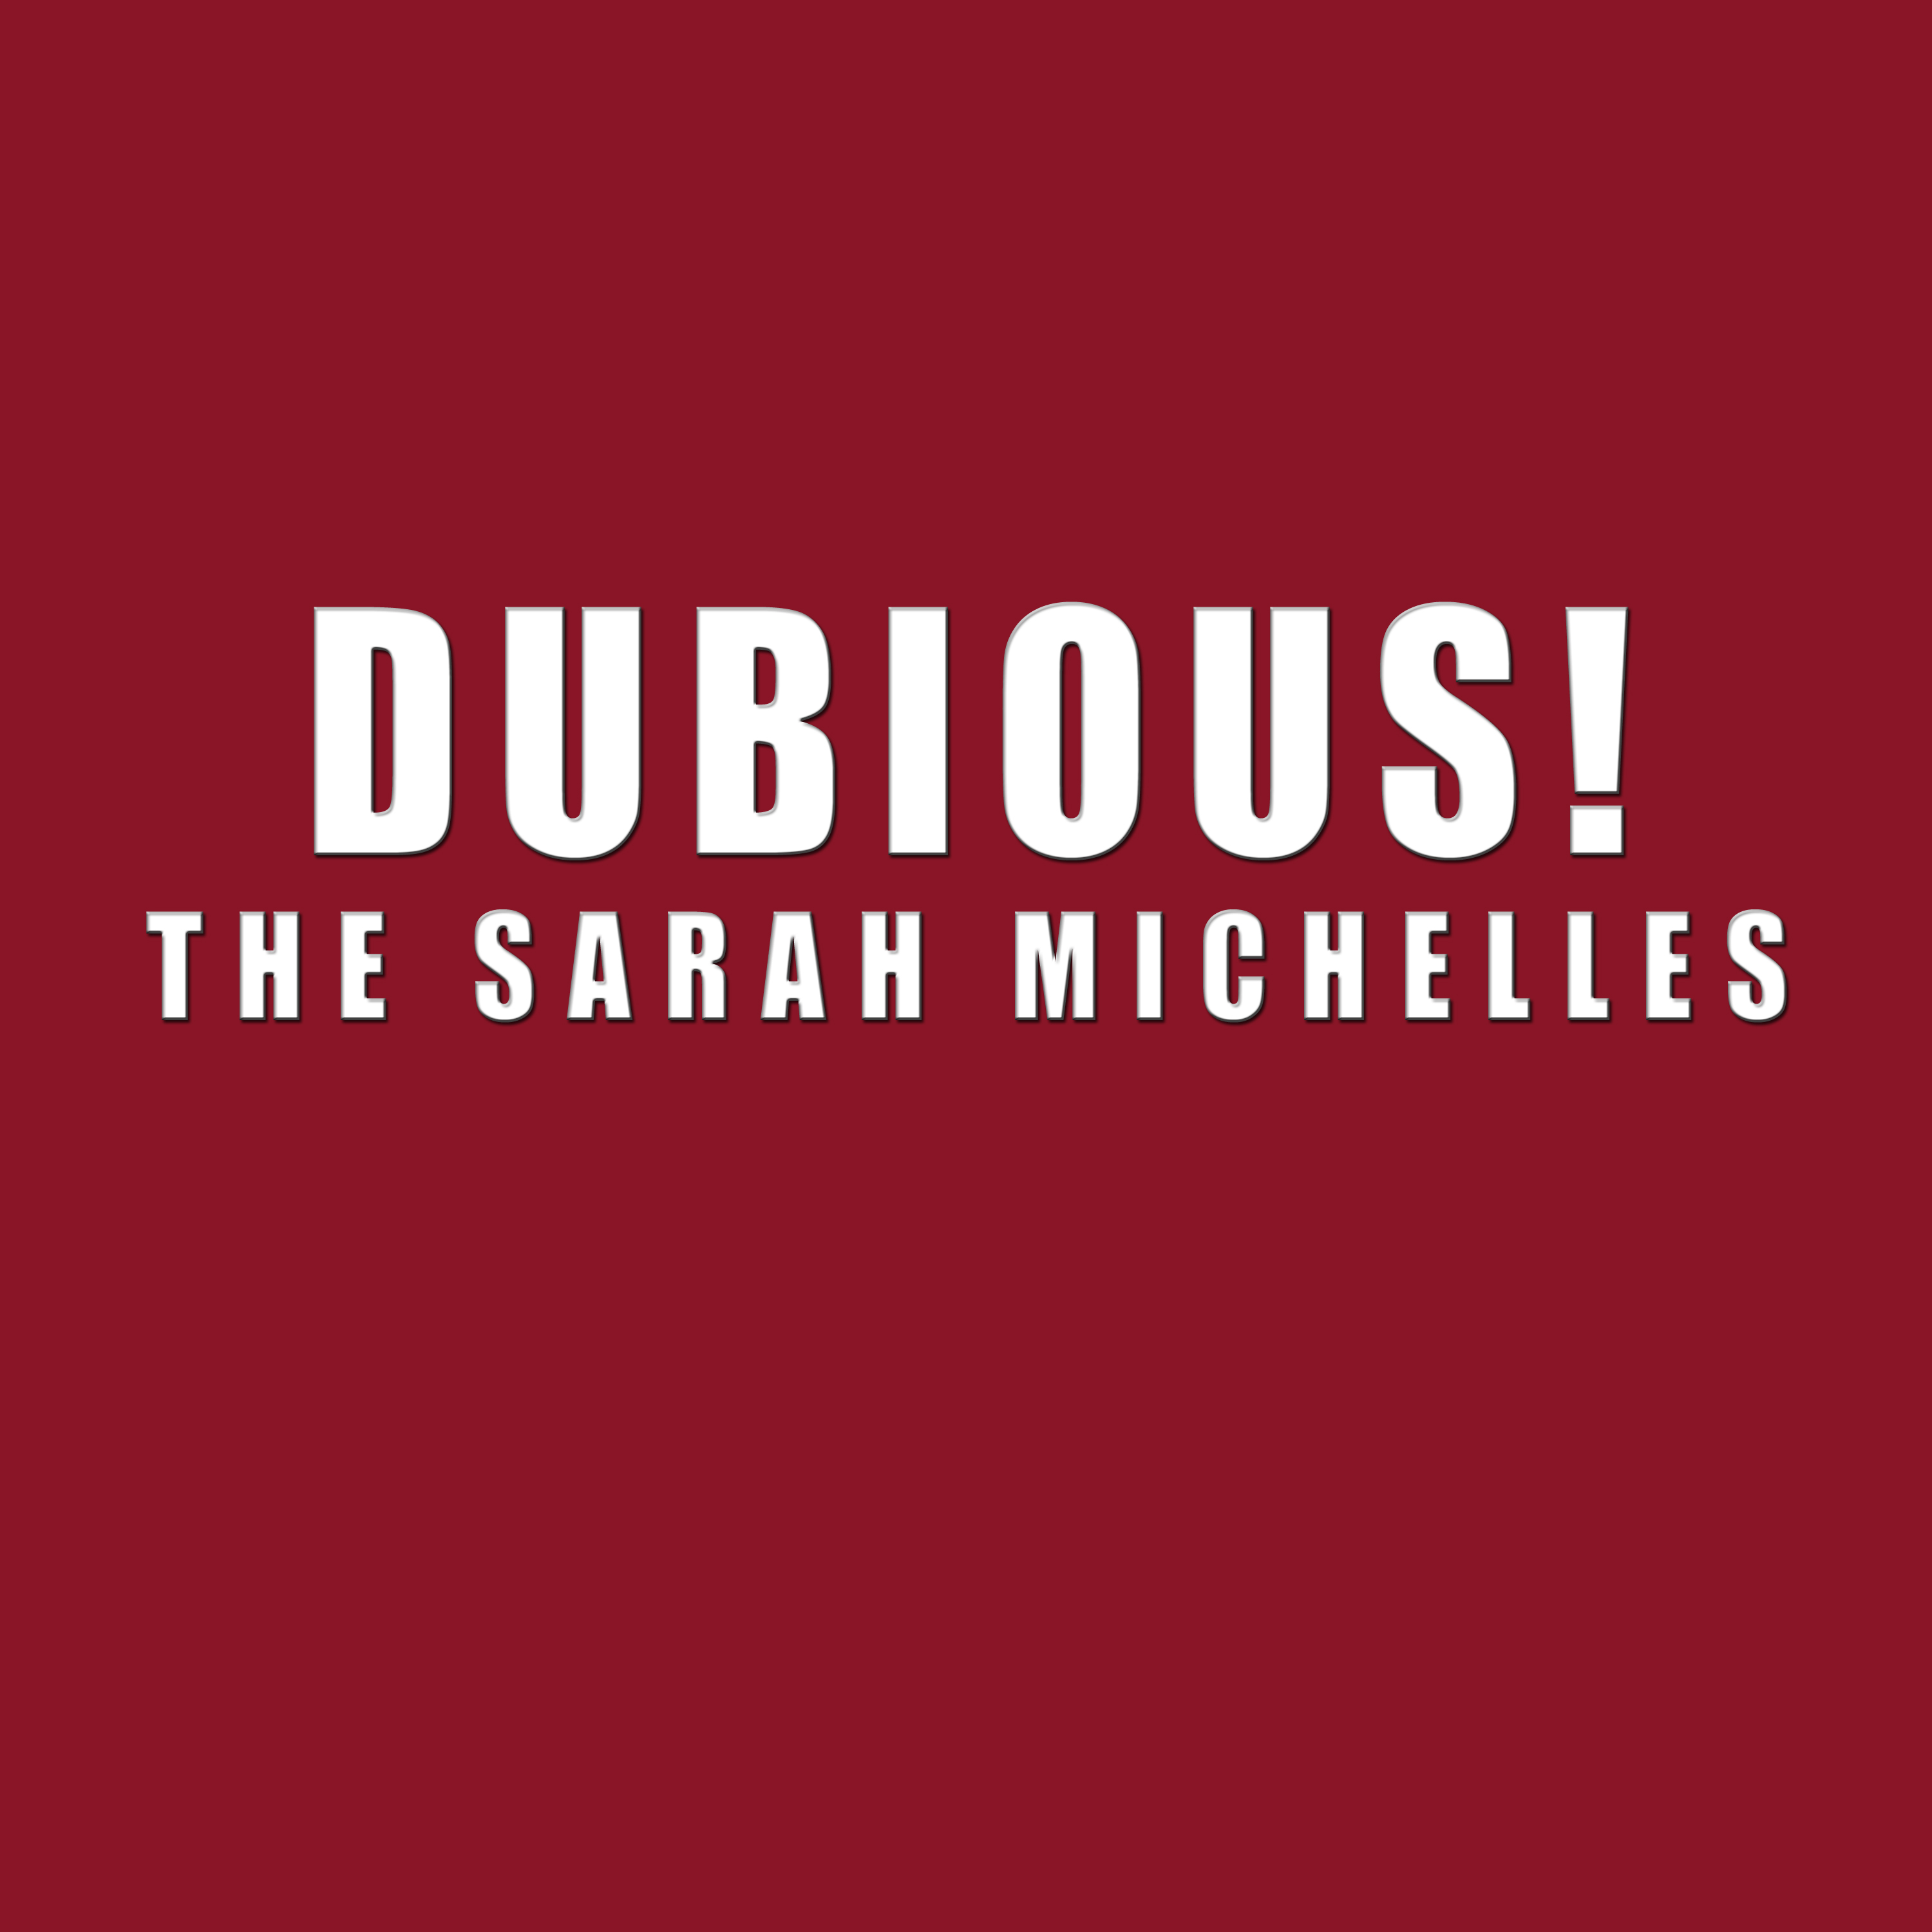 The Sarah Michelles - Dubious!